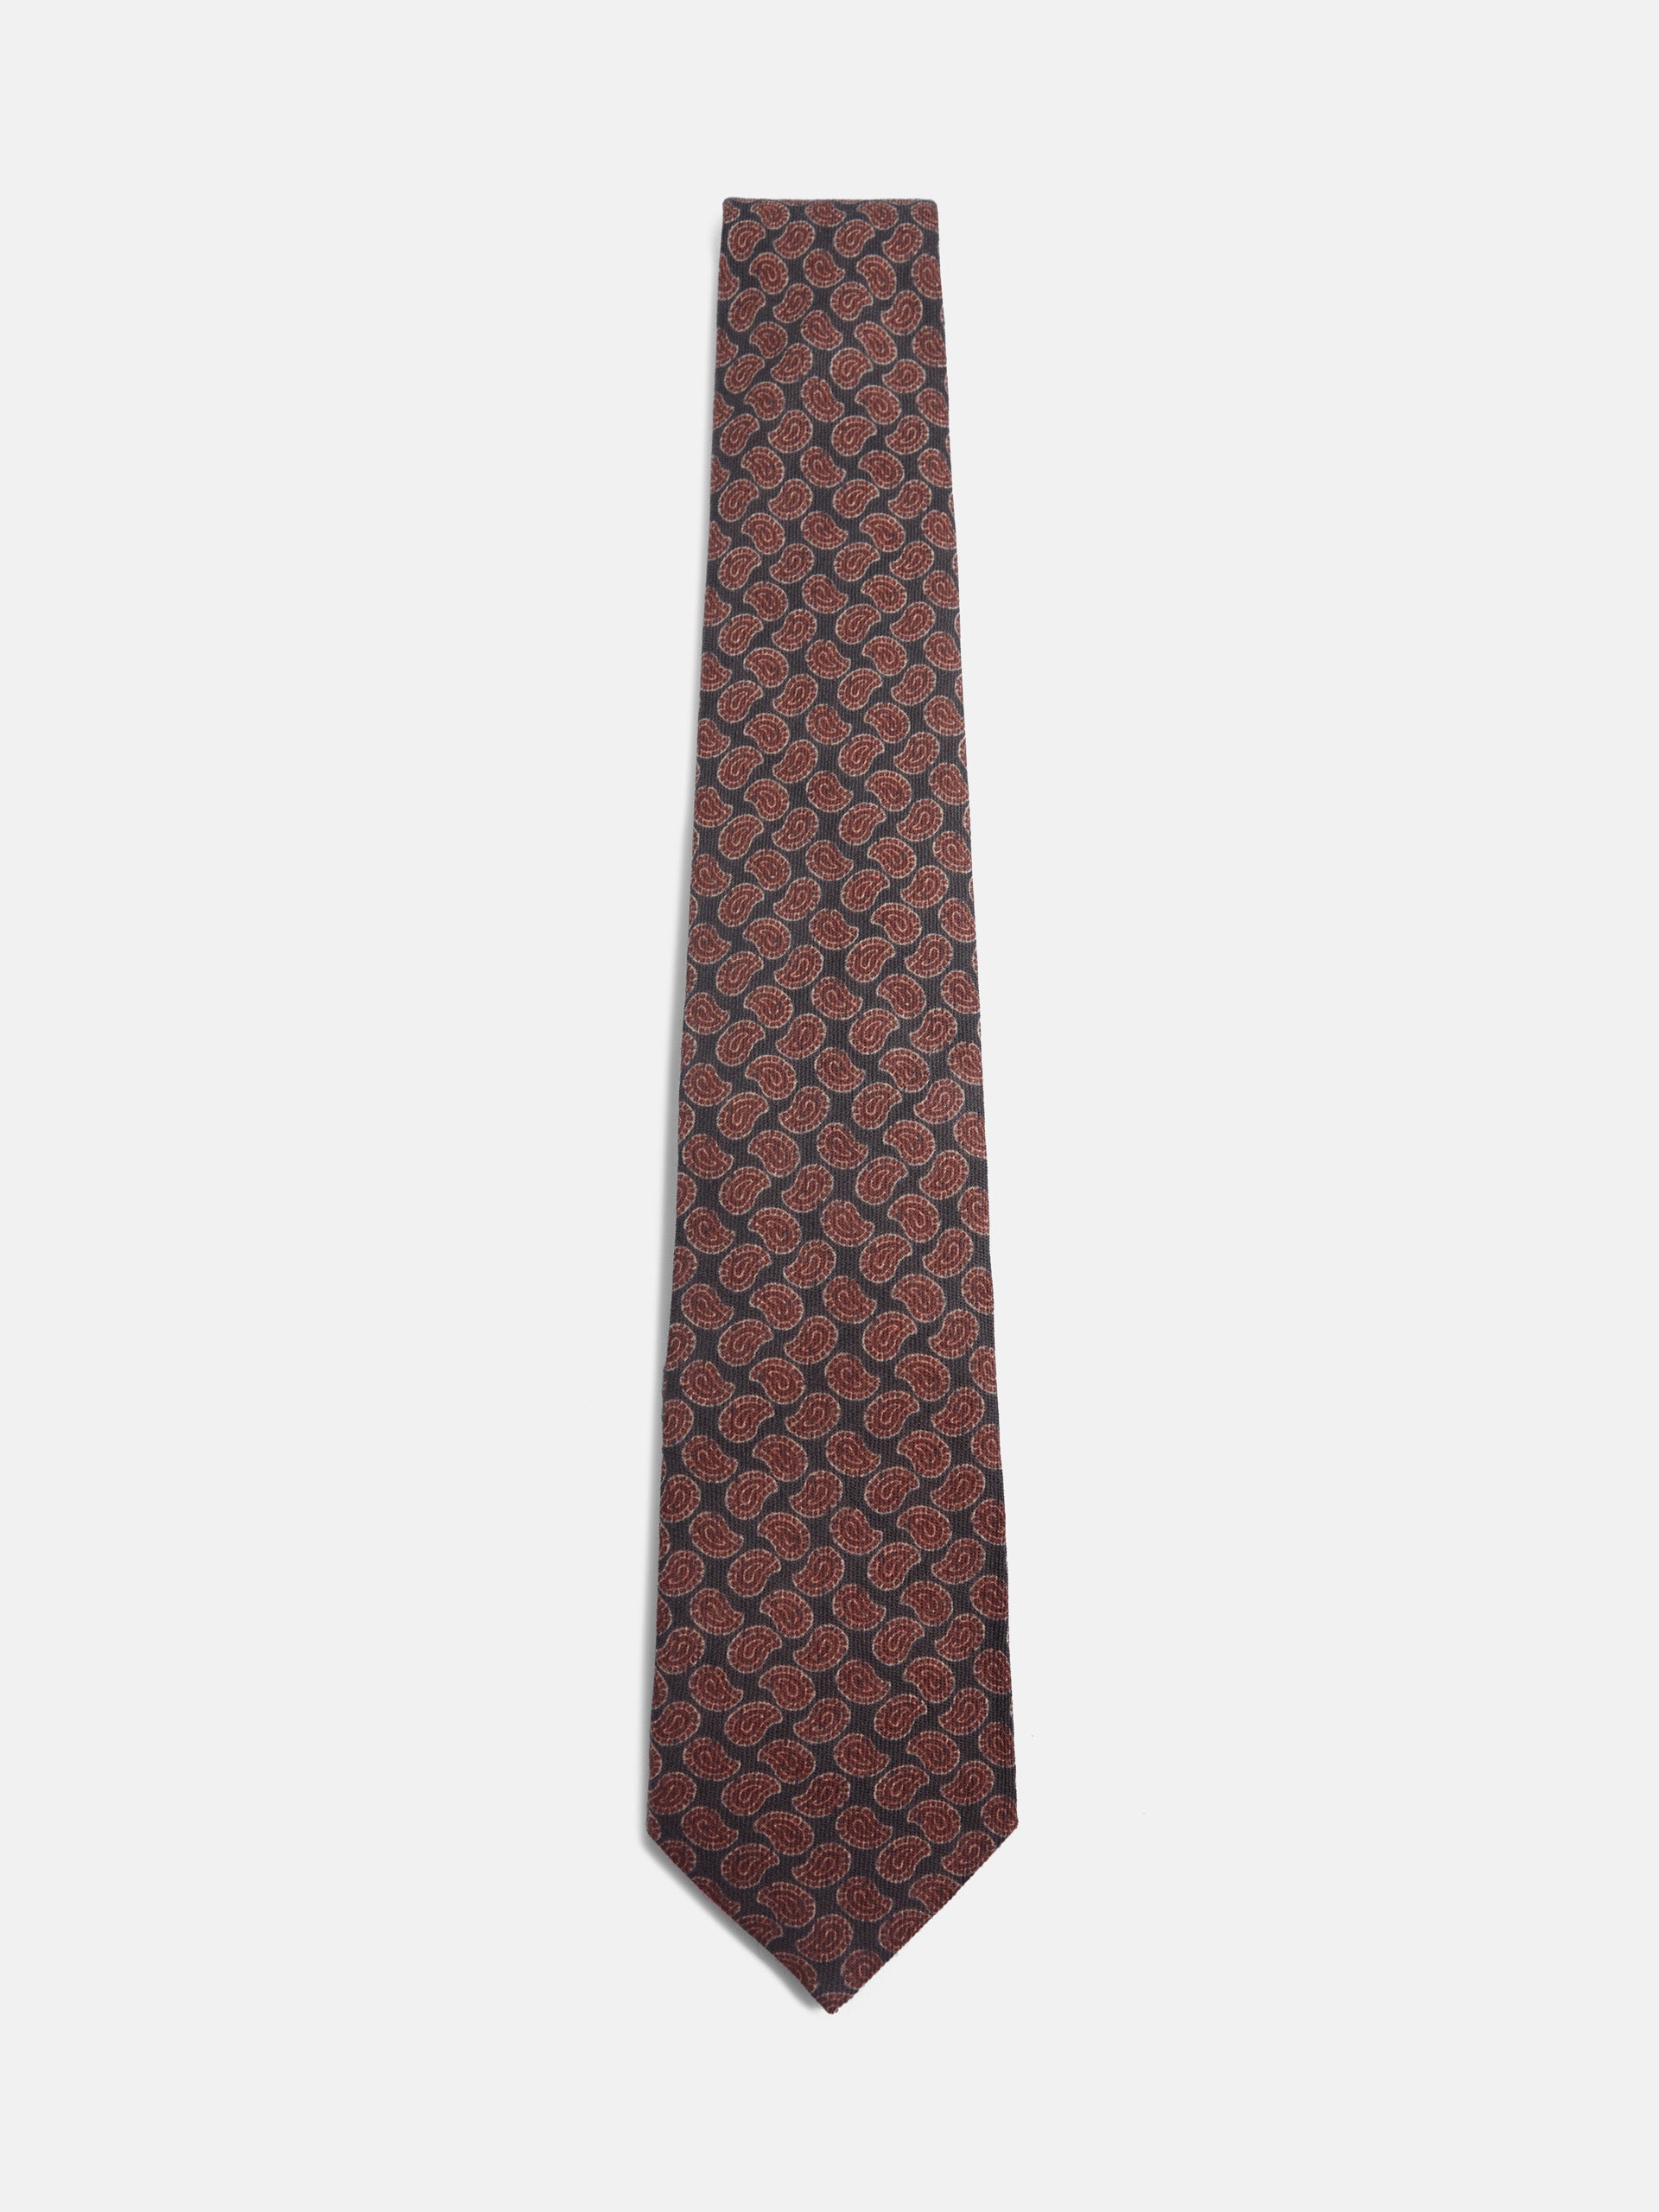 Cravate amibe imprimée gris bordeaux